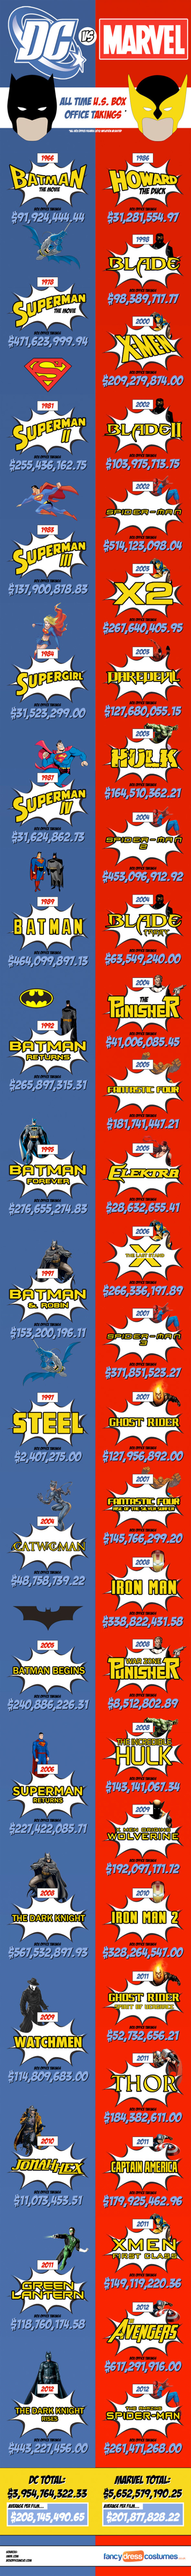 Infographic: Marvel films winnen het van DC Comics films